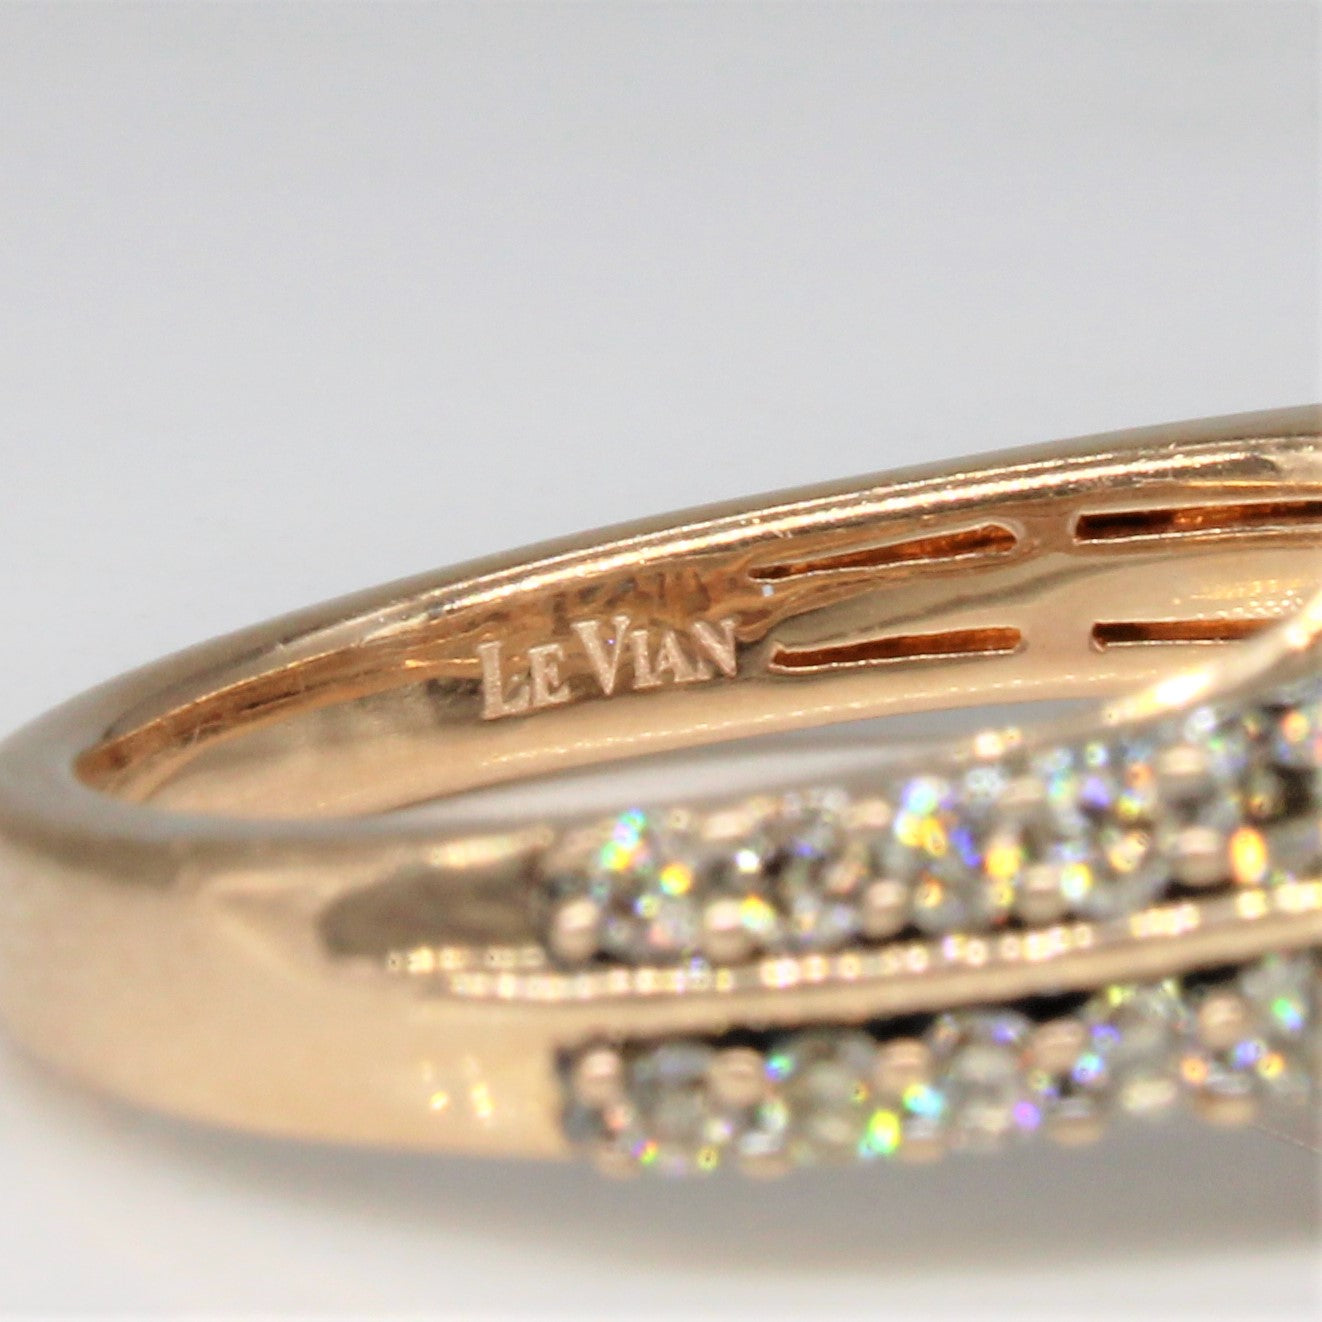 'Le Vian' Sapphire & Diamond Engagement Ring | 0.85ct, 0.58ctw | SZ 7 |